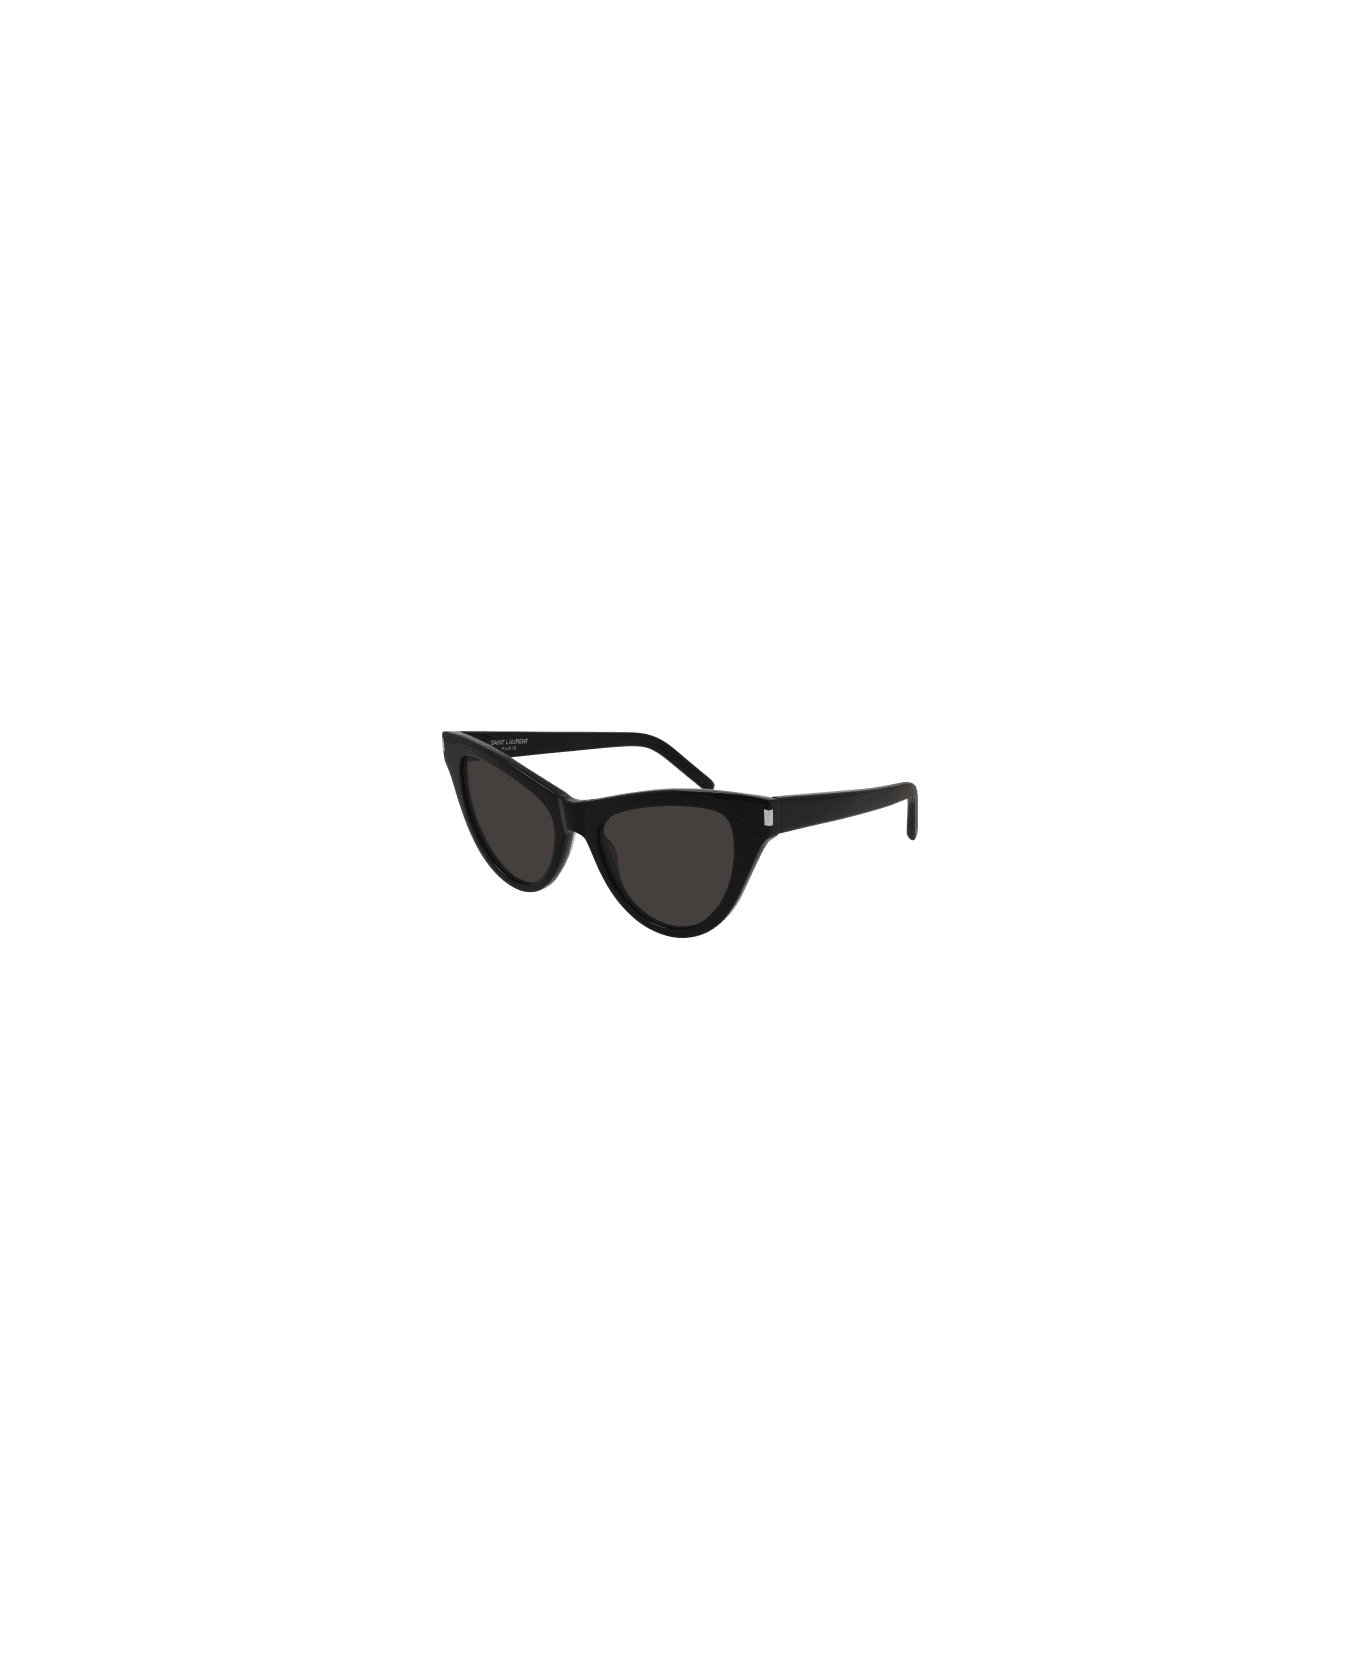 Saint Laurent Eyewear SL 425 Sunglasses - Black Black Black